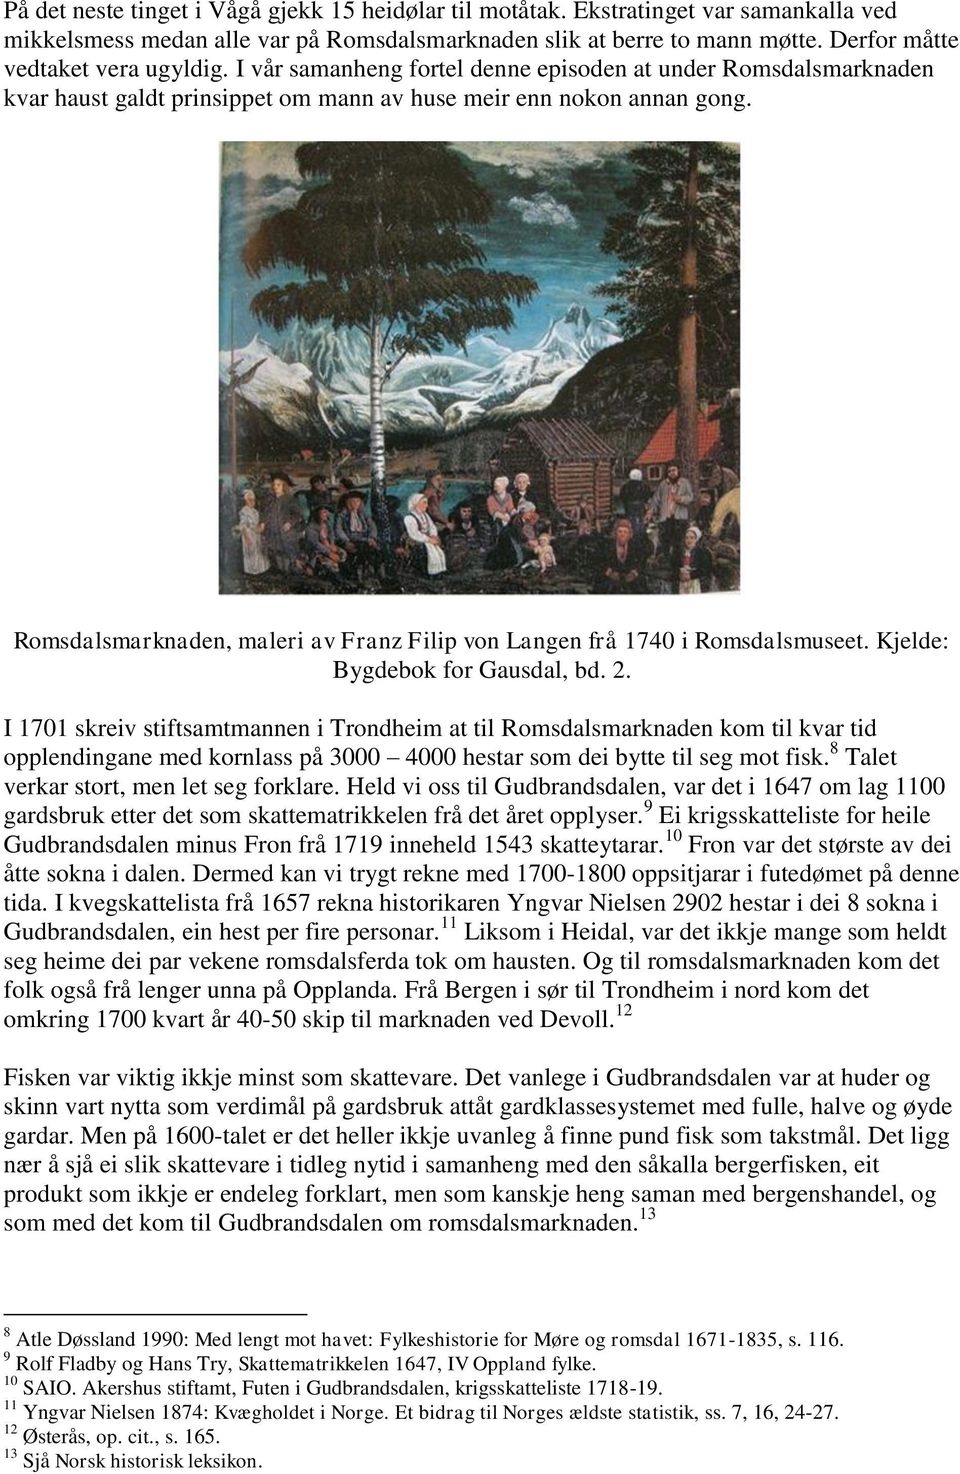 Romsdalsmarknaden, maleri av Franz Filip von Langen frå 1740 i Romsdalsmuseet. Kjelde: Bygdebok for Gausdal, bd. 2.